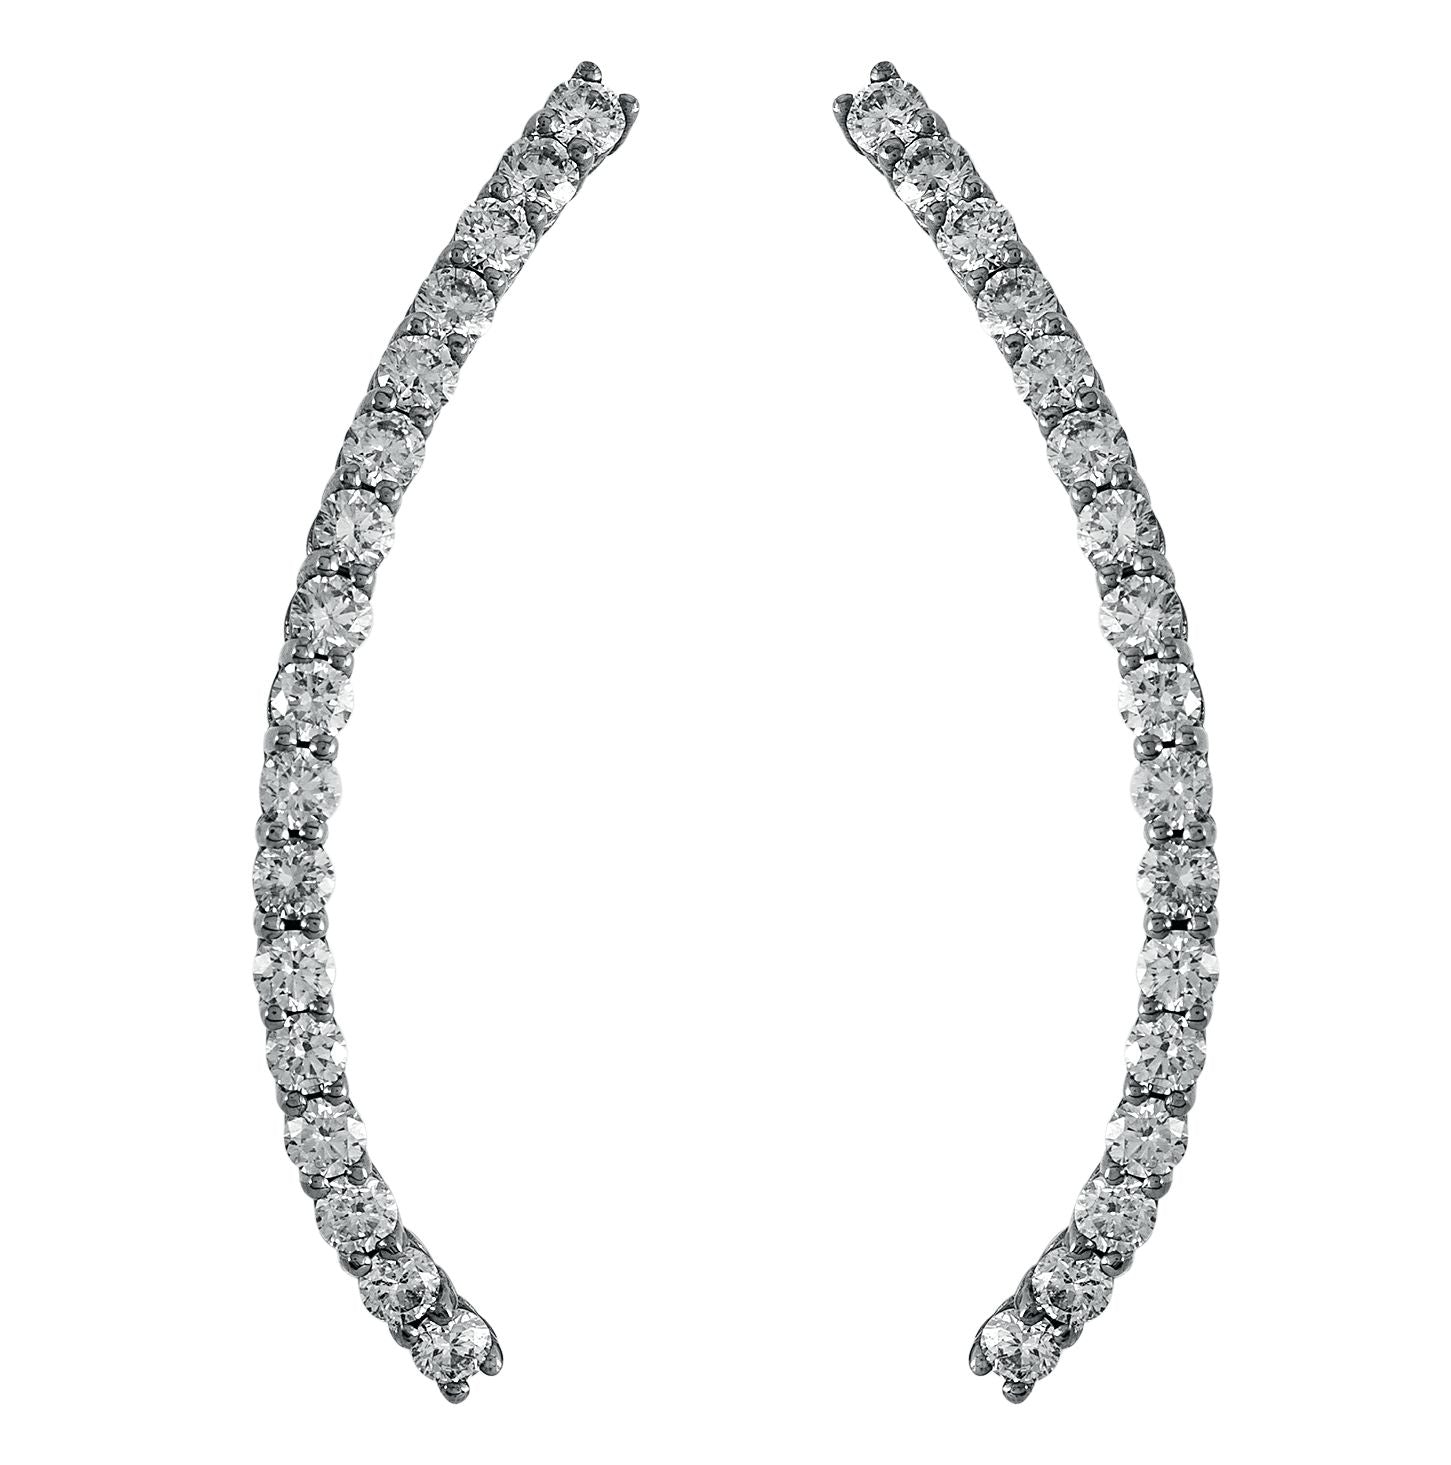 Brinco Ear Cuff Voyeur | Ouro Branco 18K E Diamantes - Jack Vartanian - Ear Cuffs